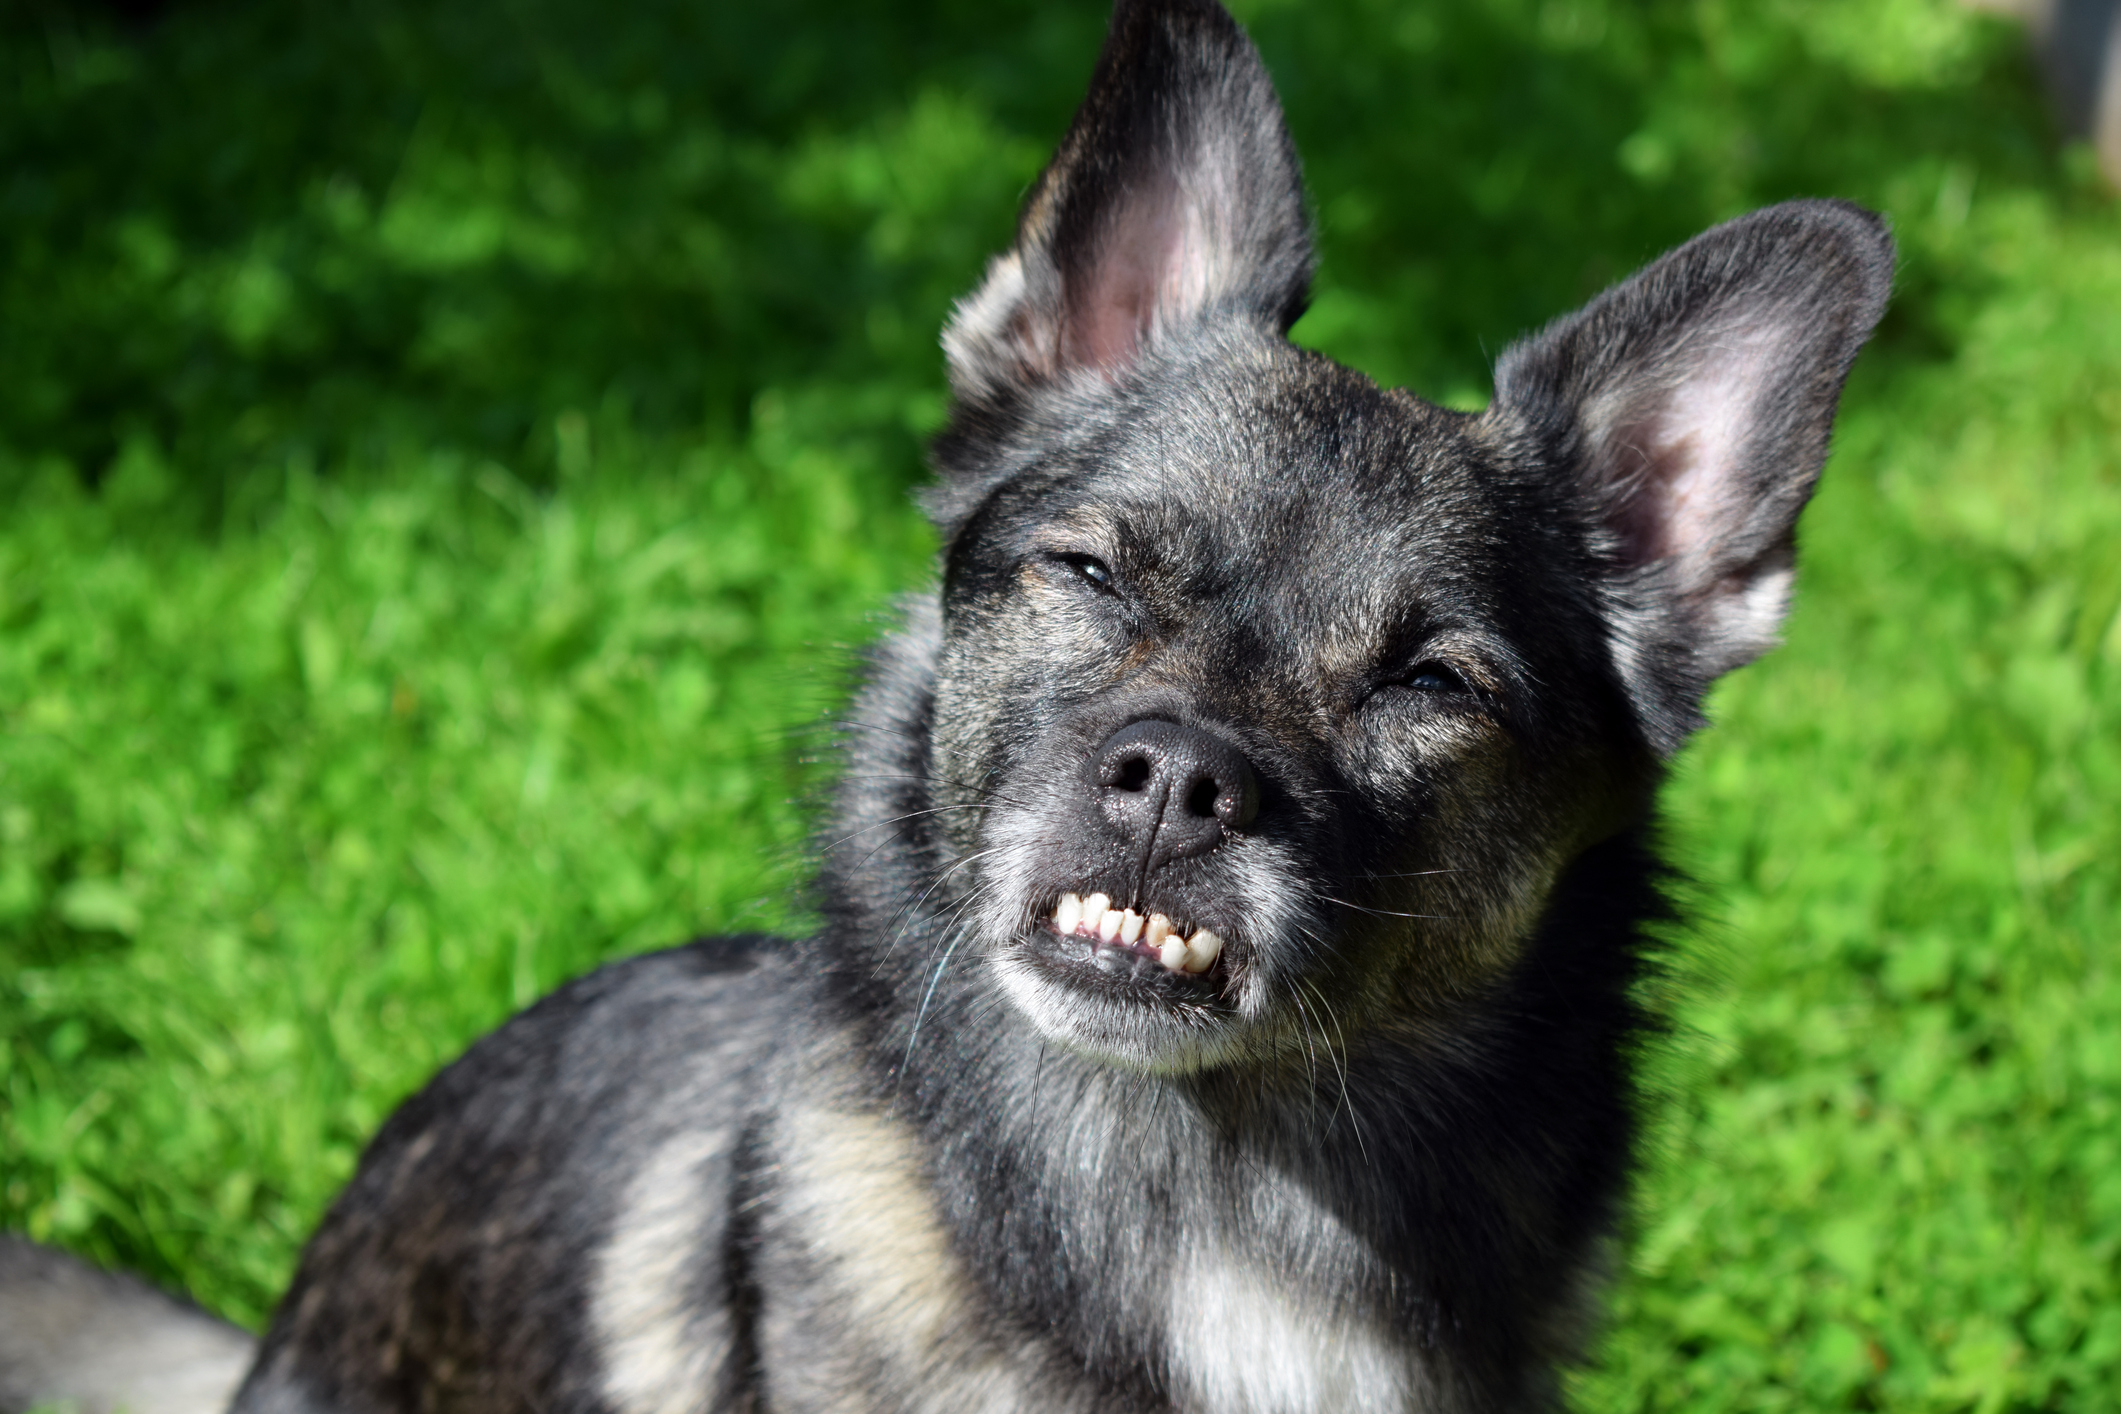  كلب تقويم الأسنان: متى يشار إليه؟ كم يكلف؟ كيف هي الصيانة؟ إعرف كل شيء!